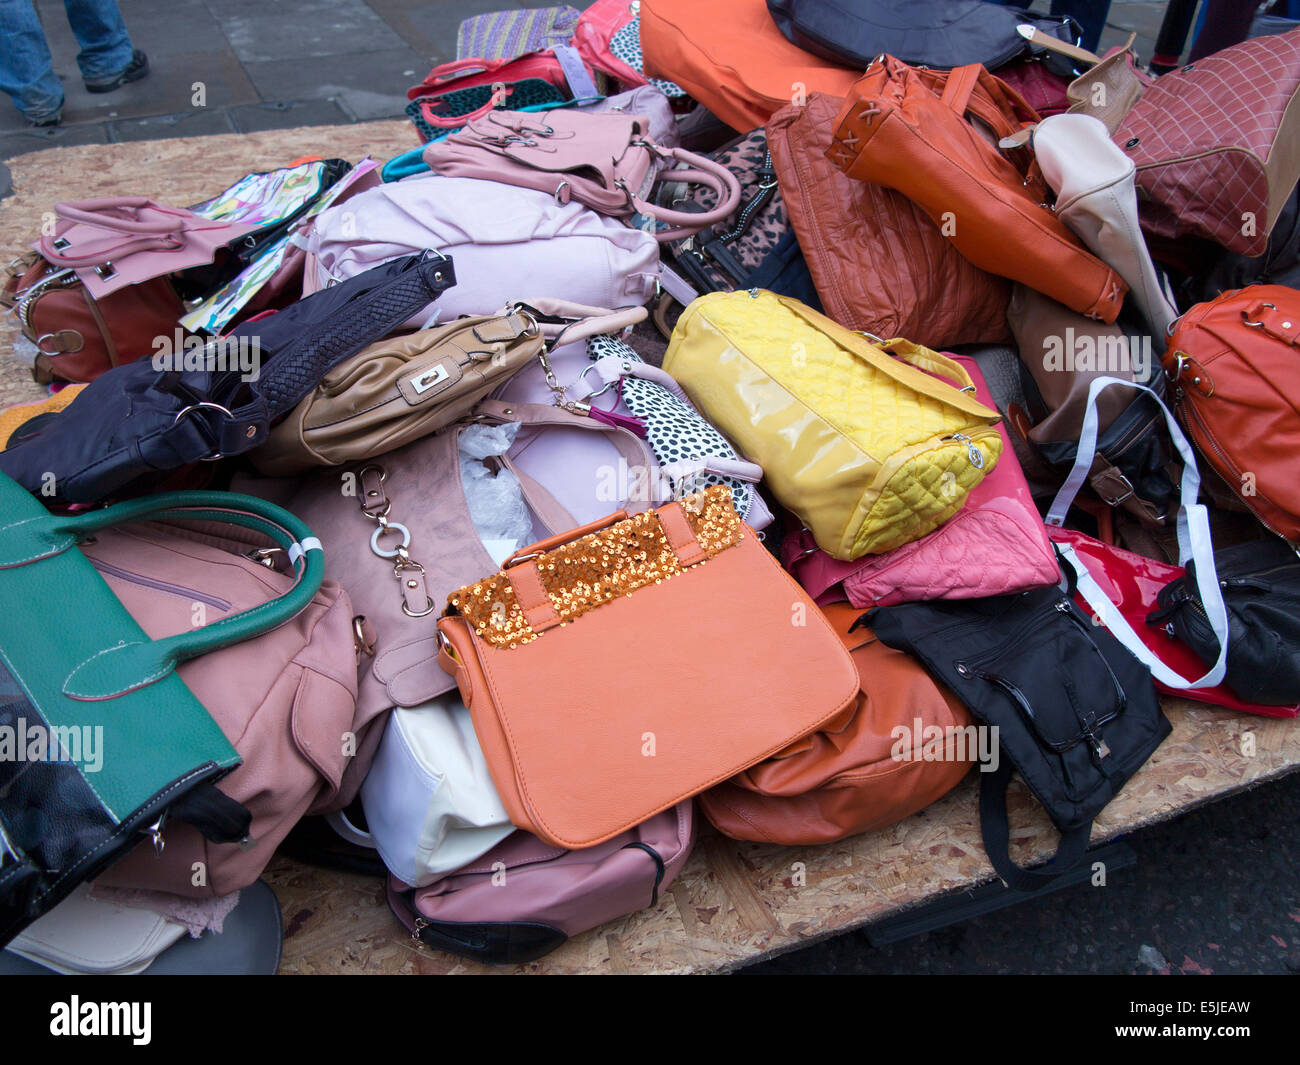 Haufen von gebrauchte abgenutzte secondhand Taschen Handtaschen zu verkaufen  Stockfotografie - Alamy